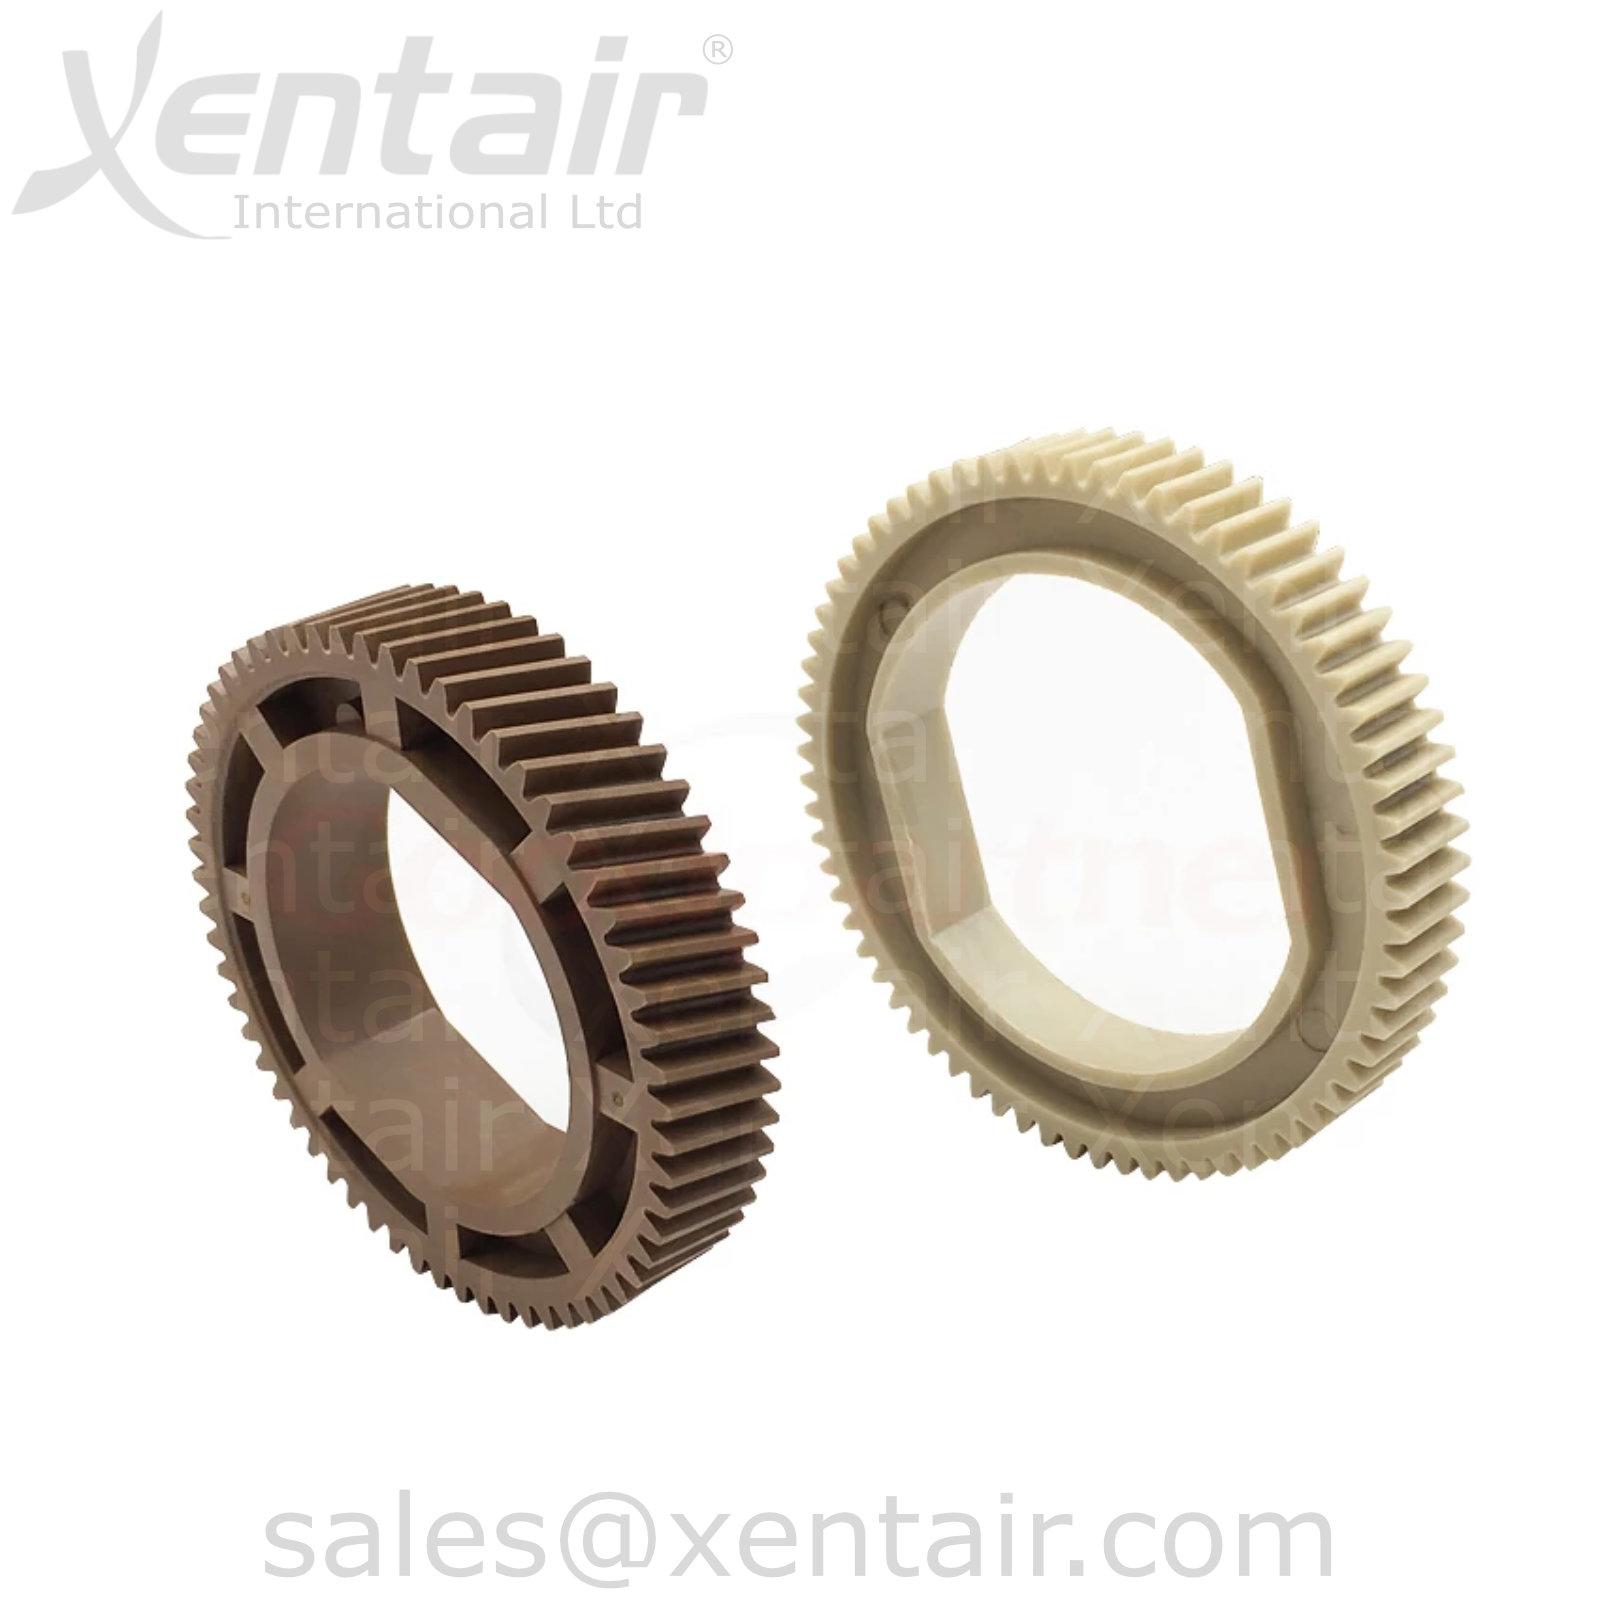 Compatible Fuser Upper Heat Roller Gears for Xerox® 4110 4112 4127 4590 4595 900 1100 D95 D110 D125 D136 9000 XIL4110FG